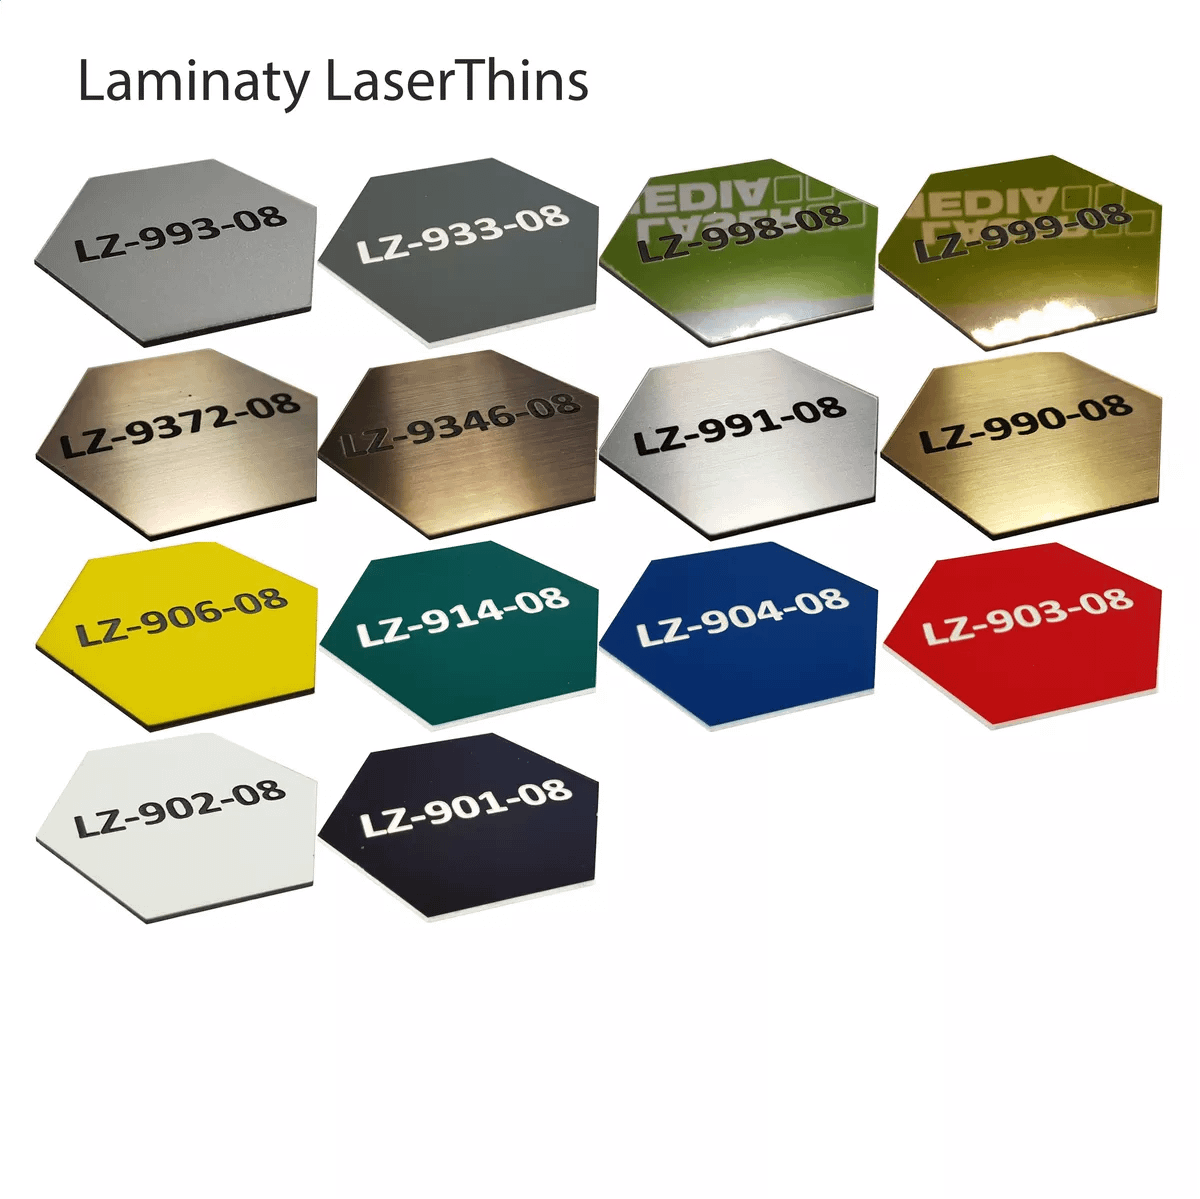 Laminaty LaserThins_webp